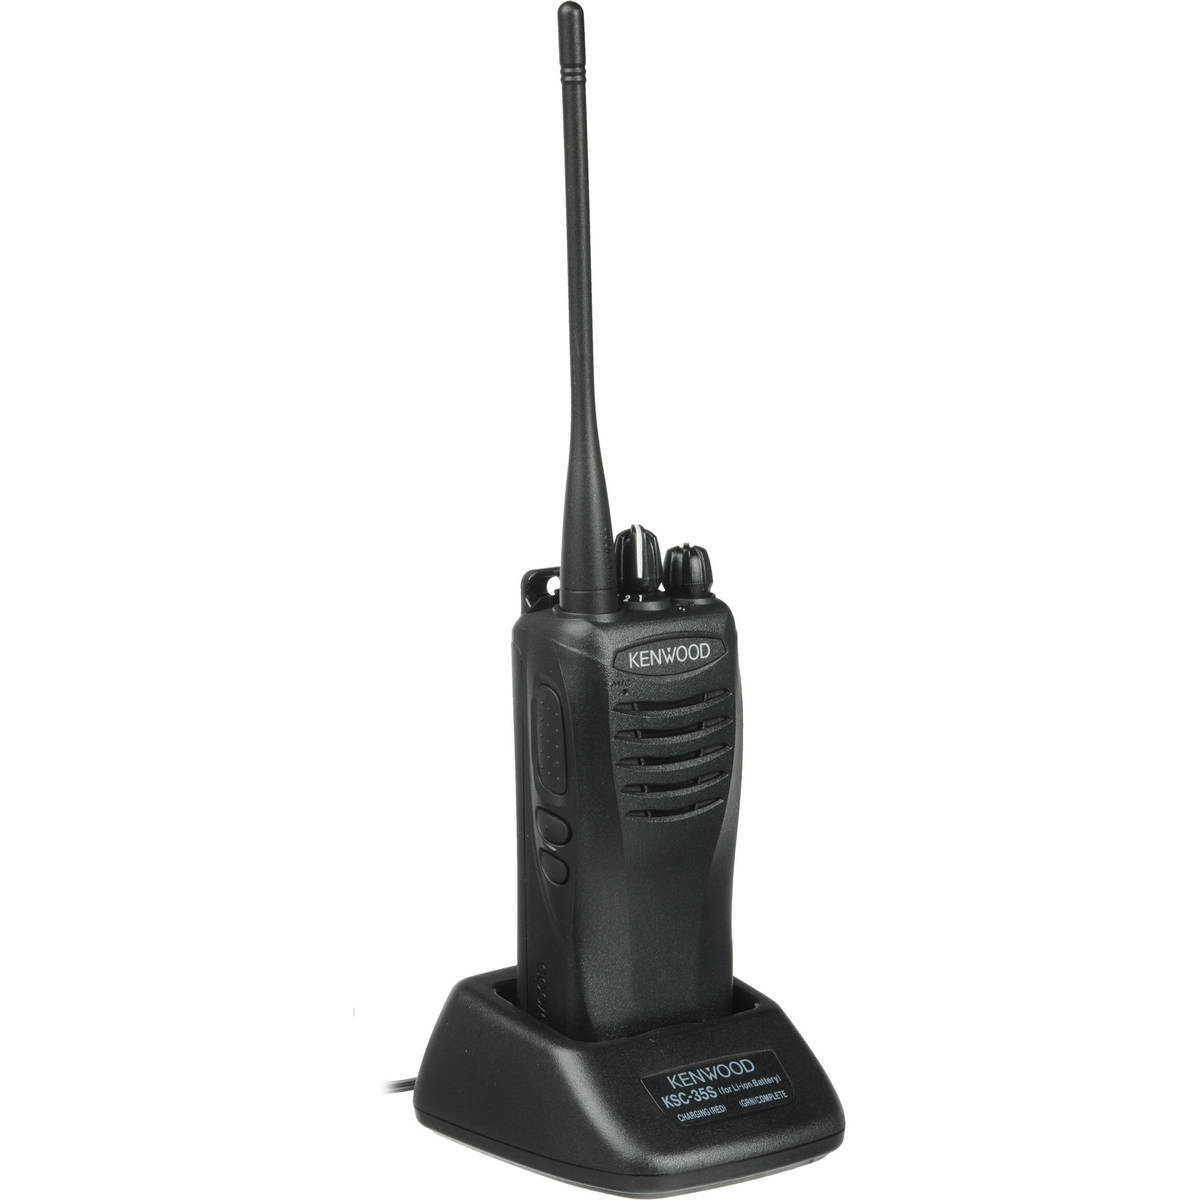 Radio KENWOOD TK-2402 Analógico VHF 136-174 MHz